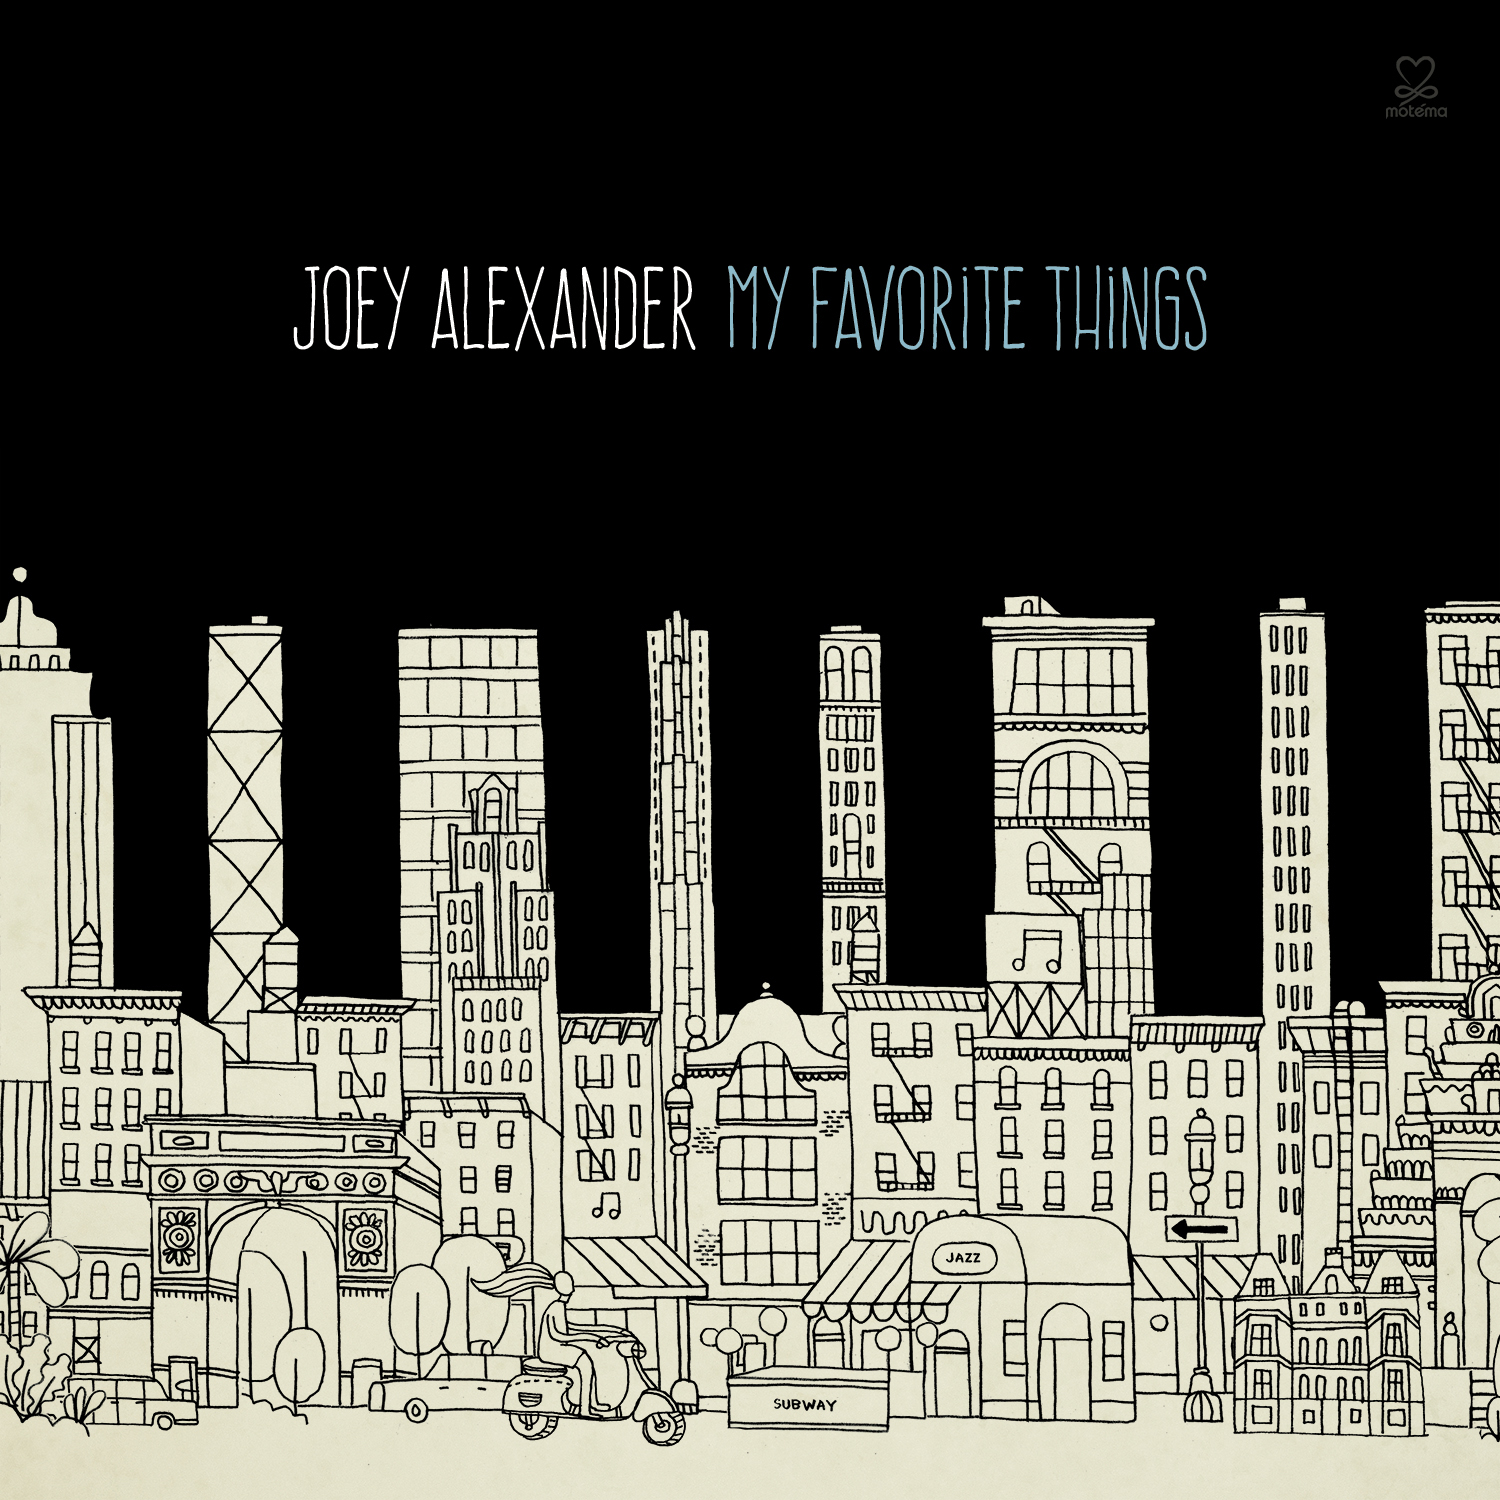 JOEY ALEXANDER:  MY FAVORITE THINGS